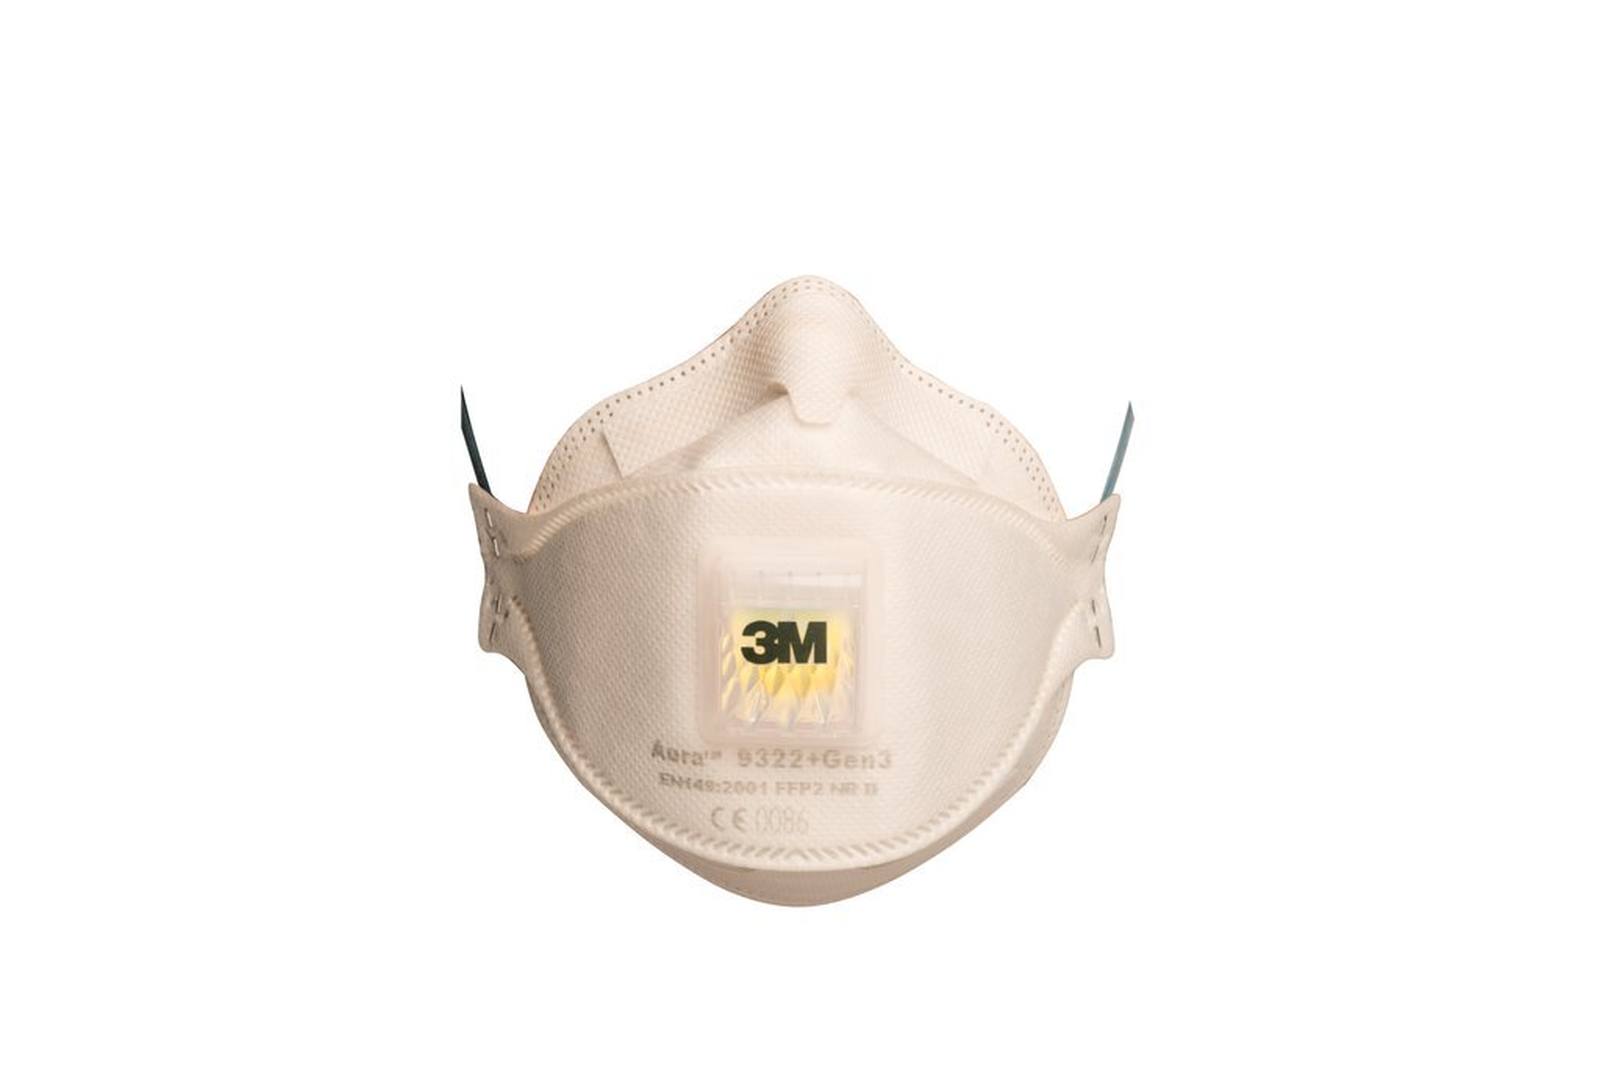 3M 9322+ Gen3 SV Aura Respirador FFP2 con válvula de exhalación de flujo frío, hasta 10 veces el valor límite (envasado individualmente de forma higiénica), paquete pequeño